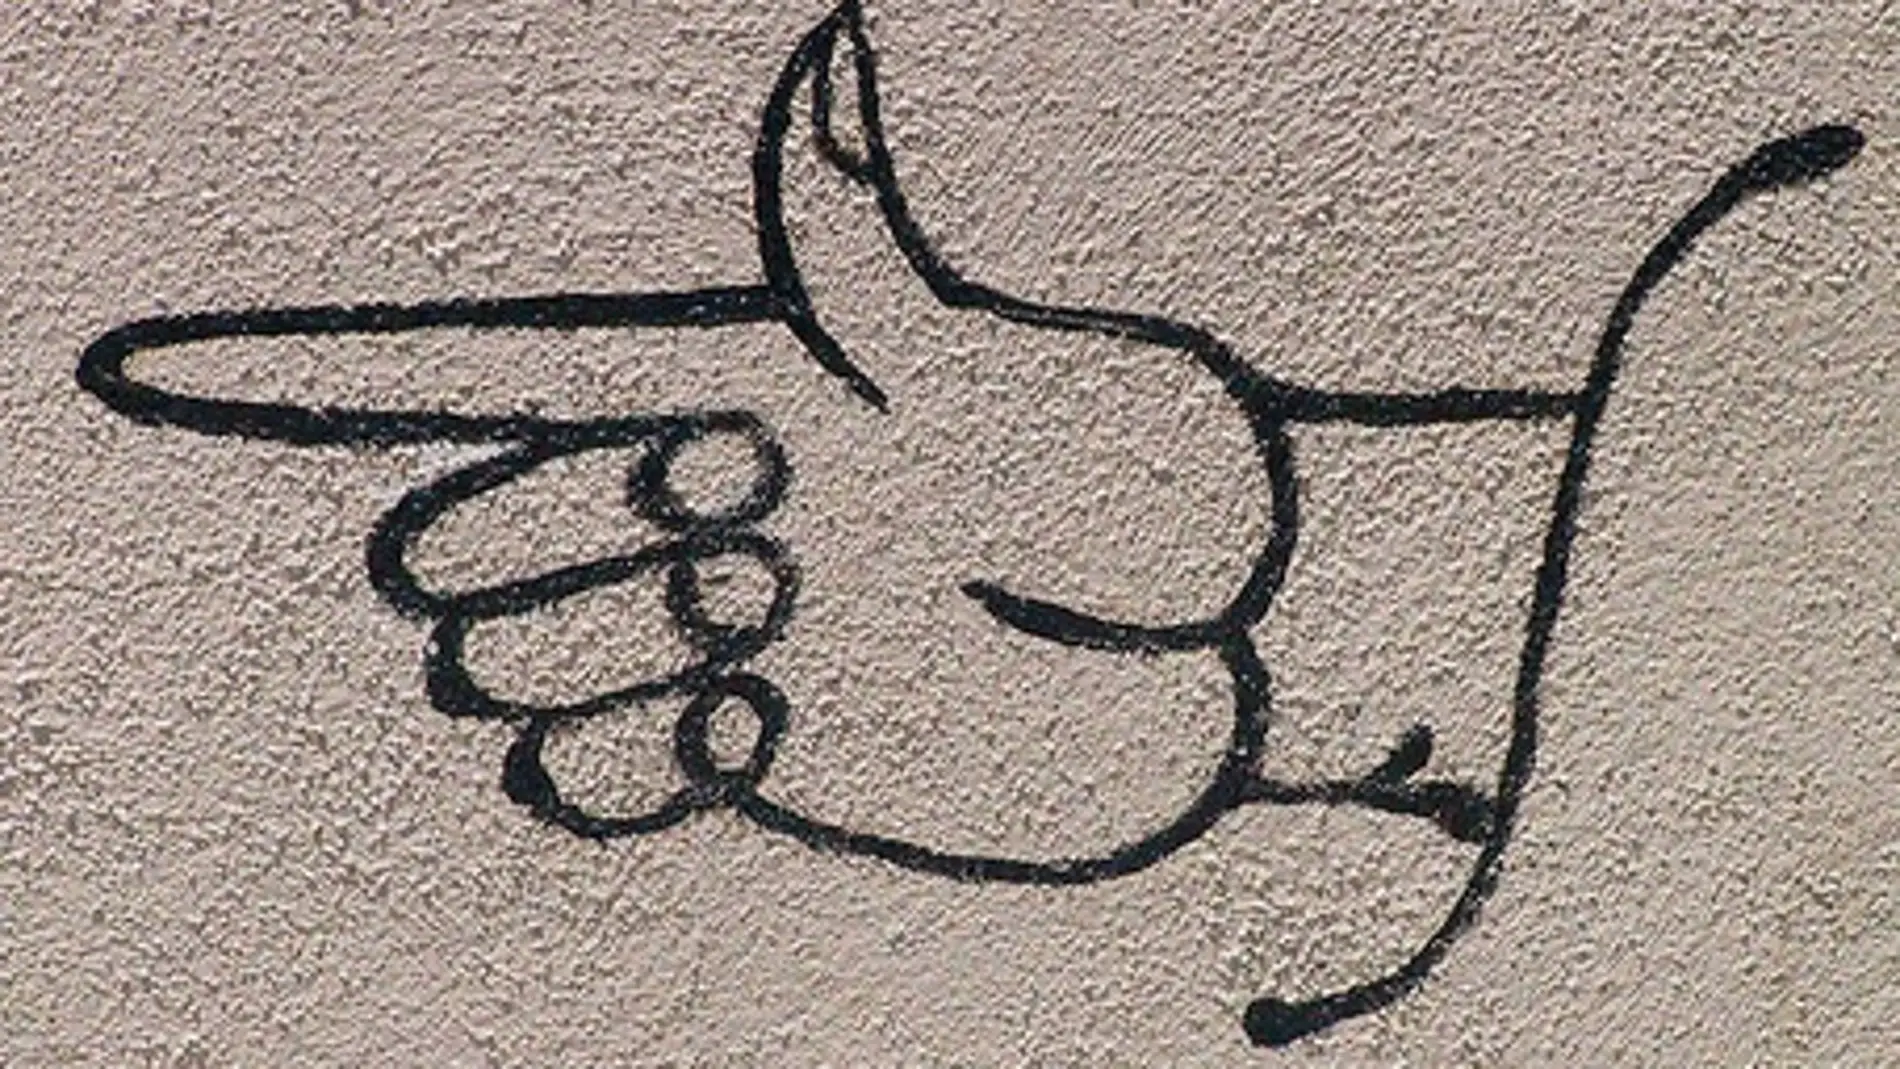 Graffiti de una mano señalando con el dedo índice